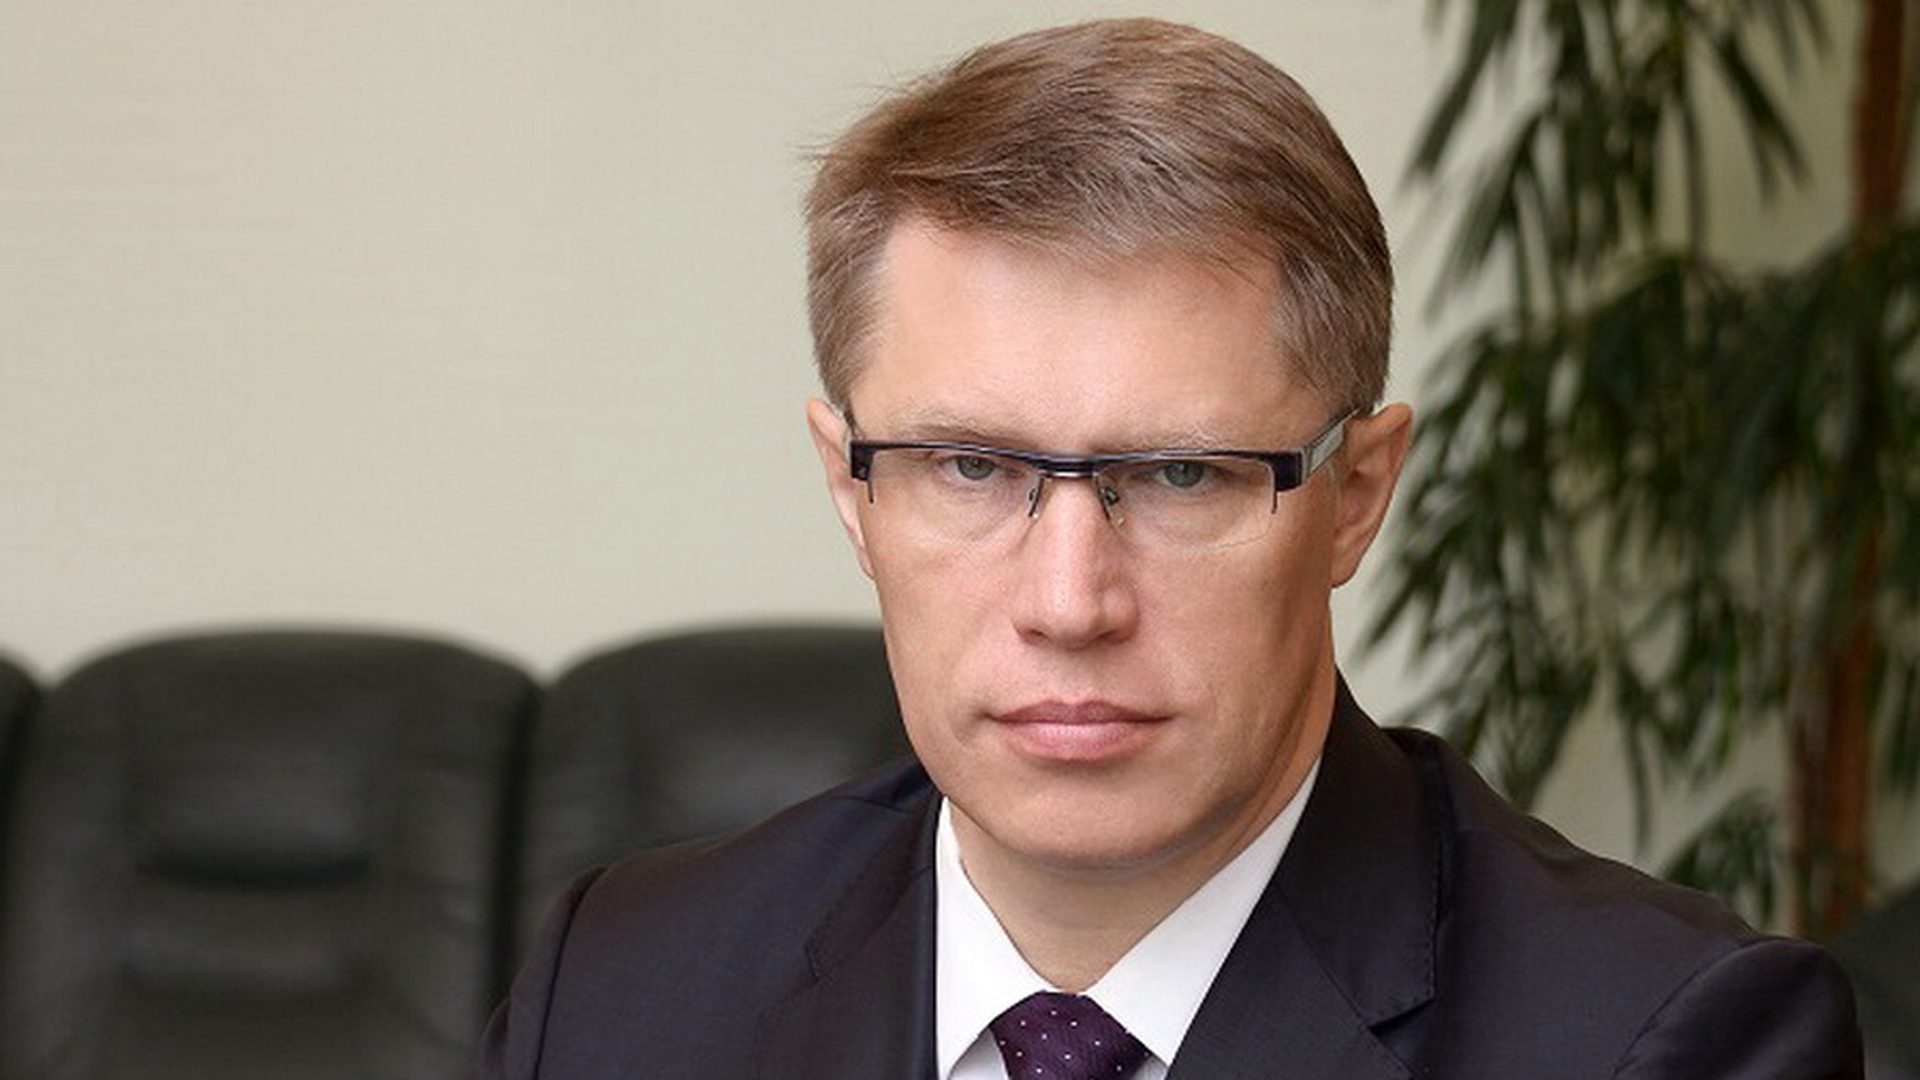 Например министр. Министр здравоохранения РФ 2020 Мурашко.